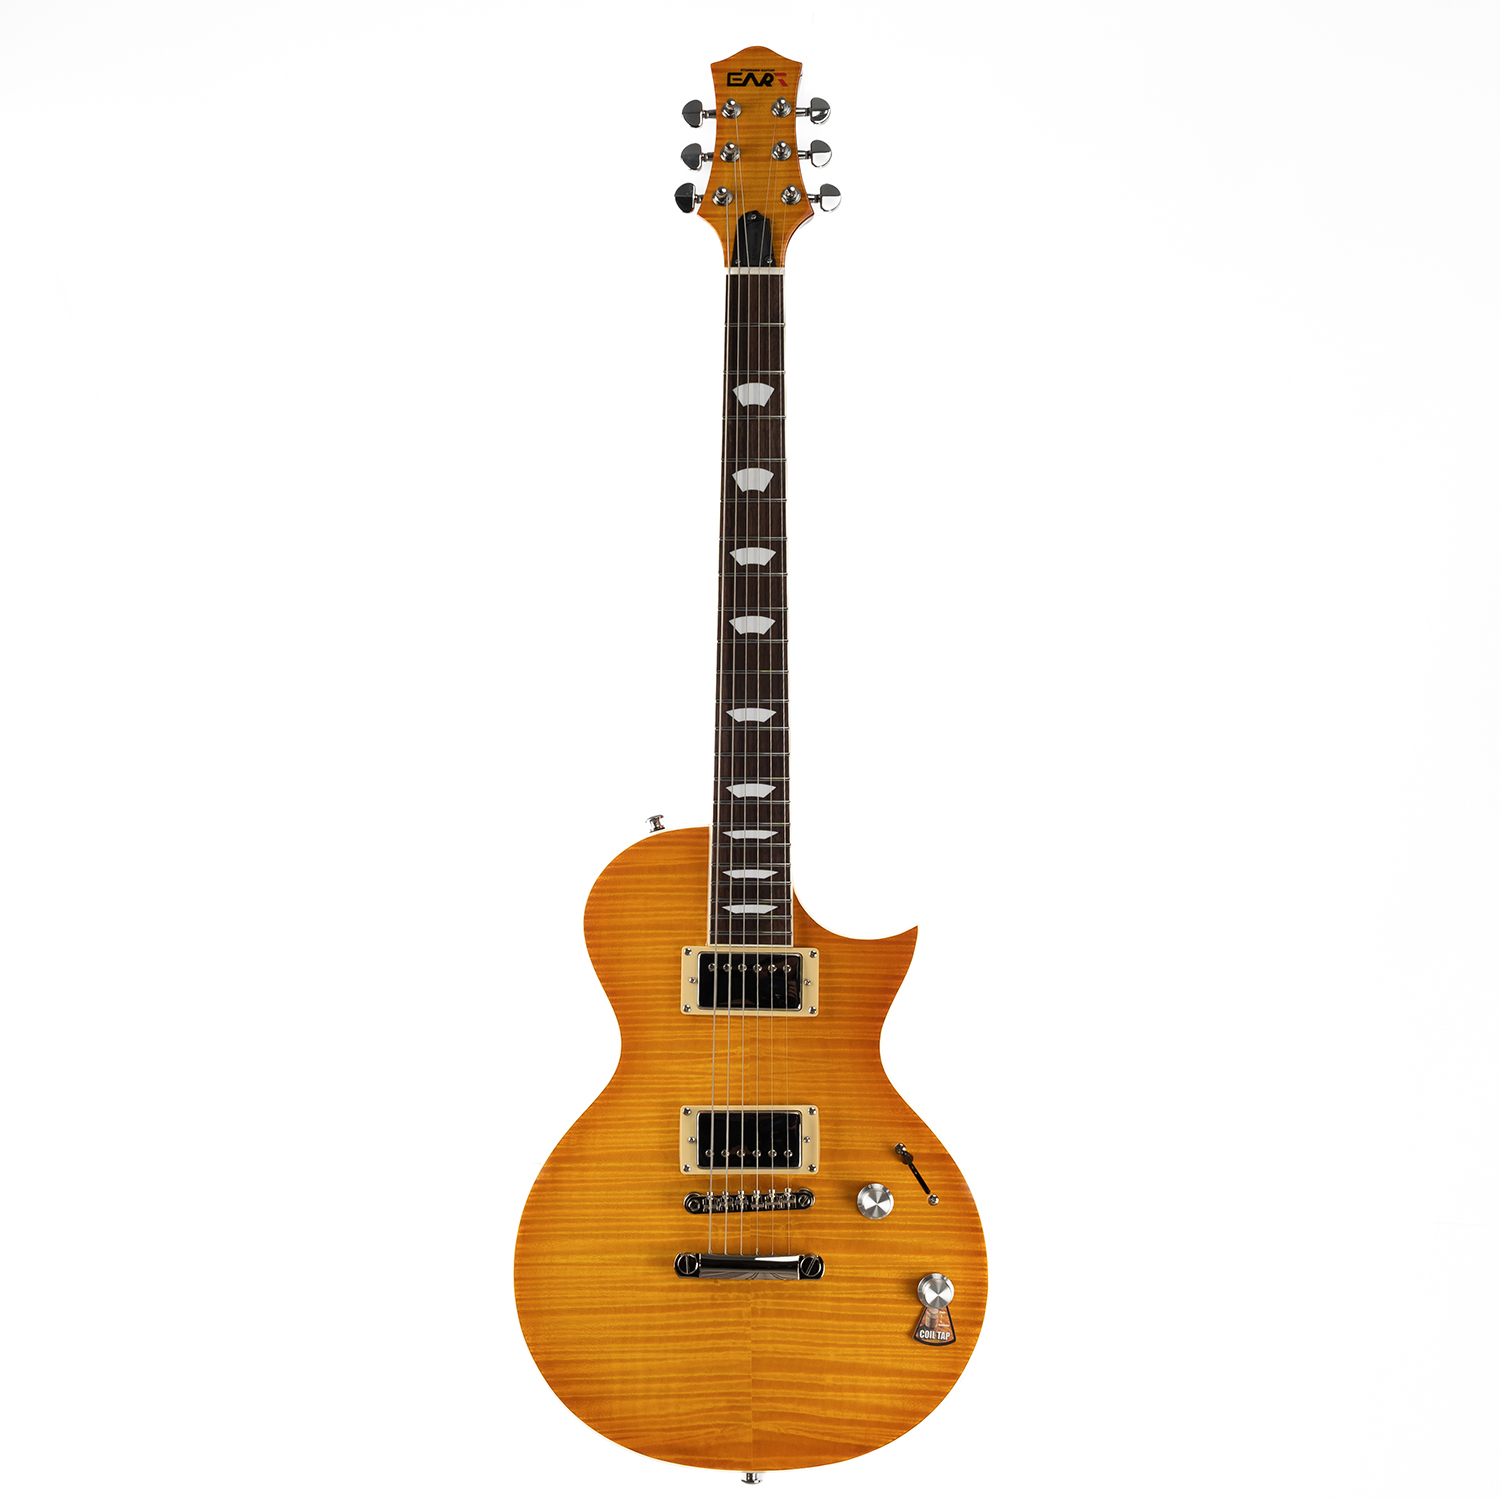 גיטרה חשמלית - Eart Guitars EGLP-620 Upgrade Flame Maple Top Standard Lemon Yellow Electric Guitars